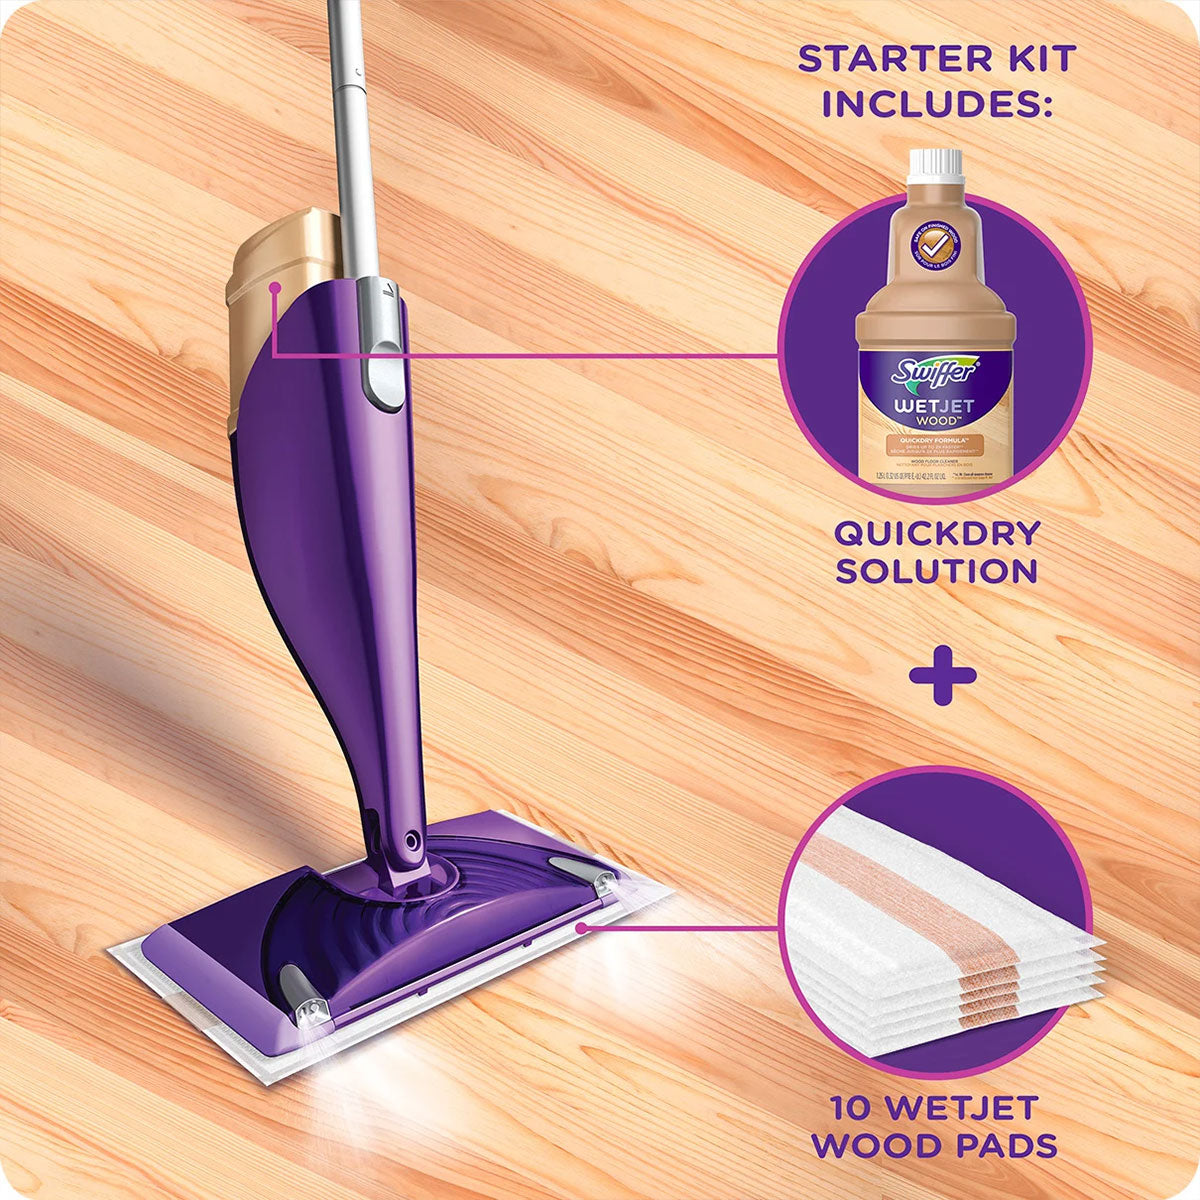 Kit de Limpieza WetJet™ incluye Mopas, Limpiador, Paños y Baterías, Aroma Lavanda, para pisos de madera | Swiffer